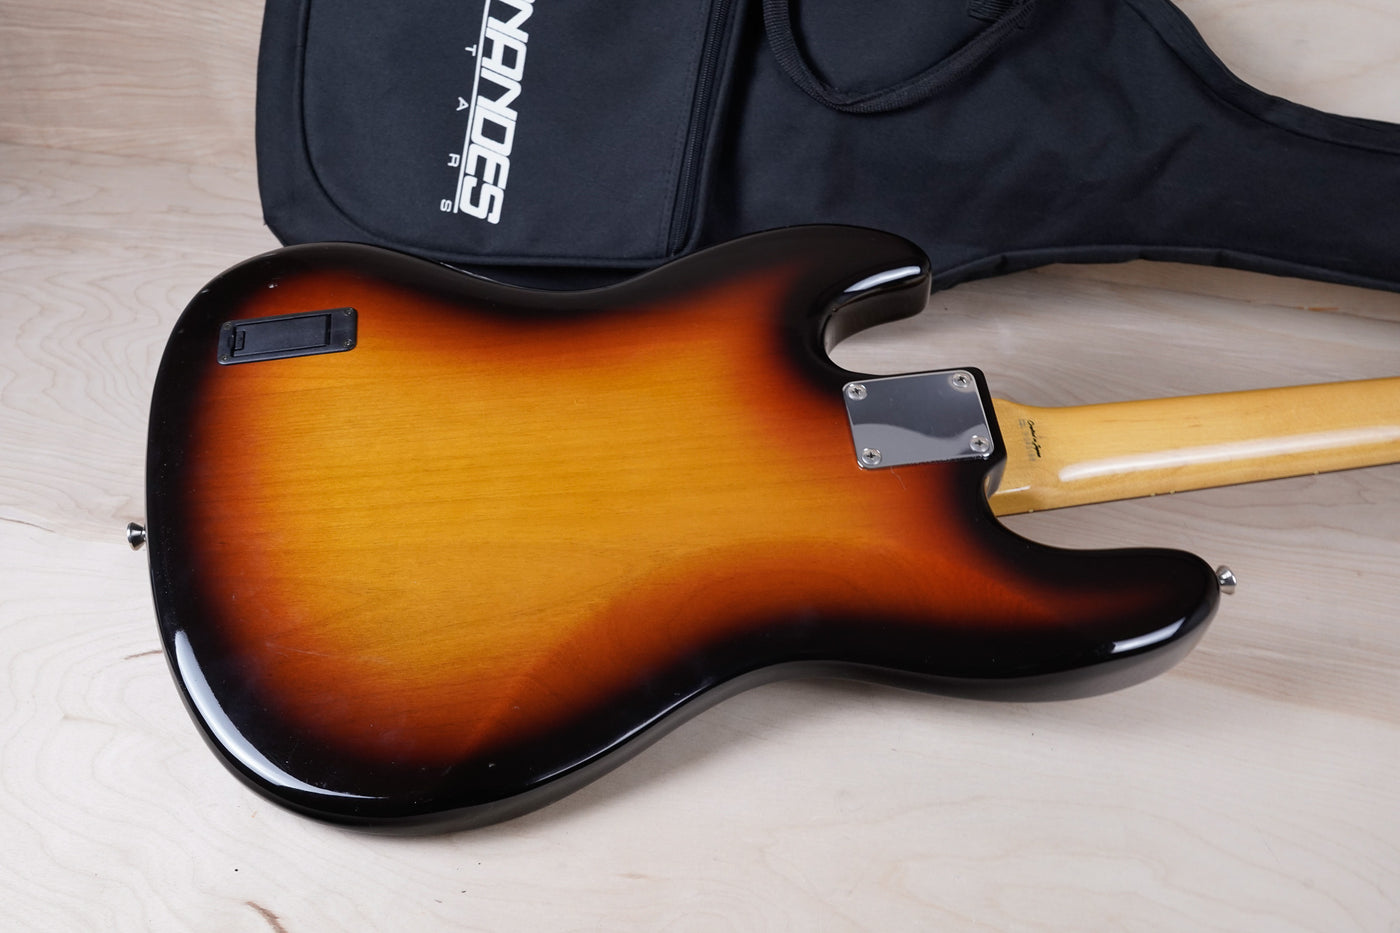 Fender JB-62M Medium Scale Jazz Bass CIJ Modified 1999 Sunburst Modified w/ Bag